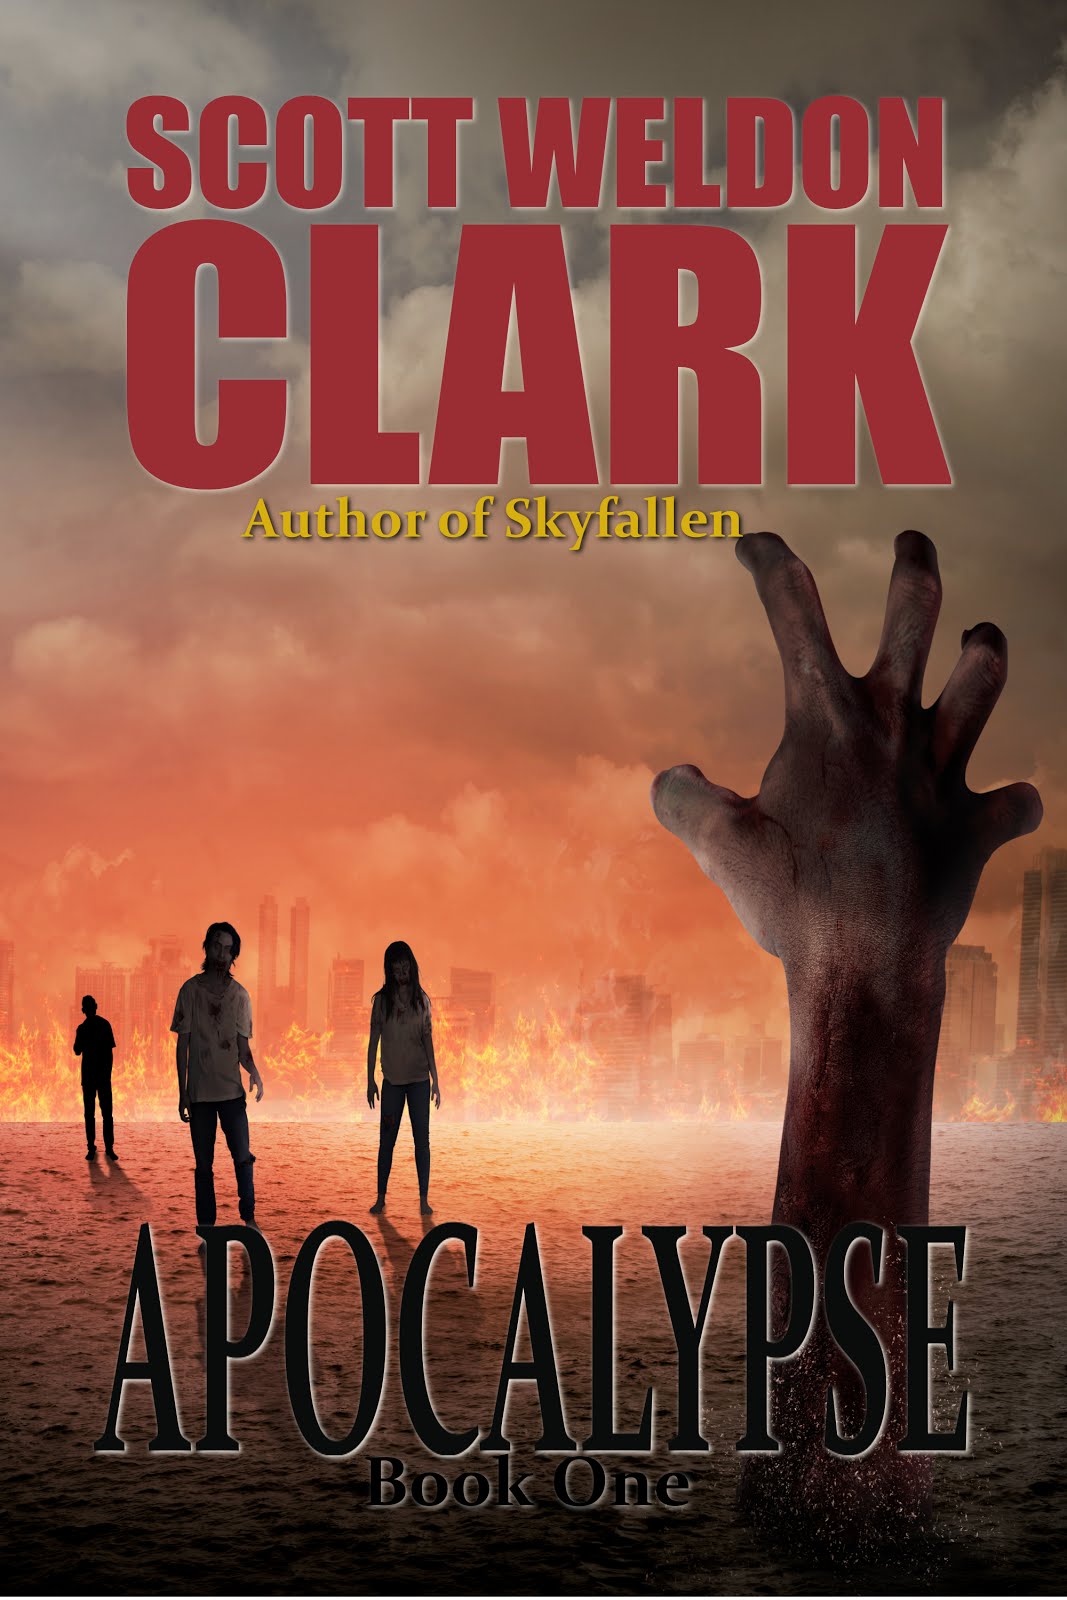 Apocalypse, Book One